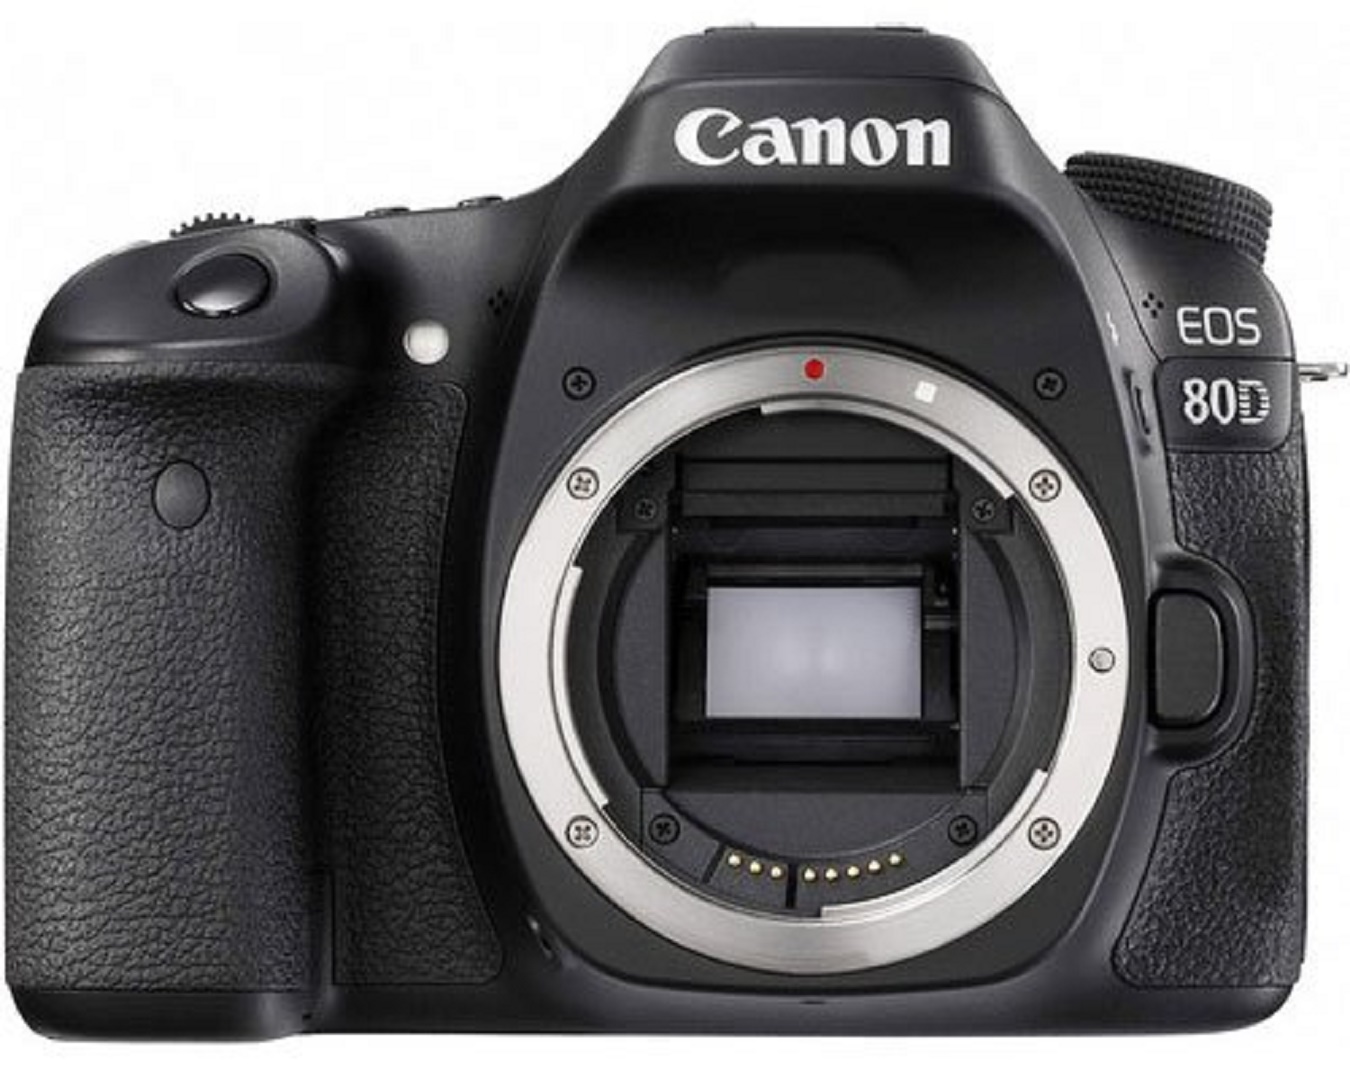 Phụ kiện đi kèm máy ảnh Canon EOS 80D tốt nhất (Phần 2)